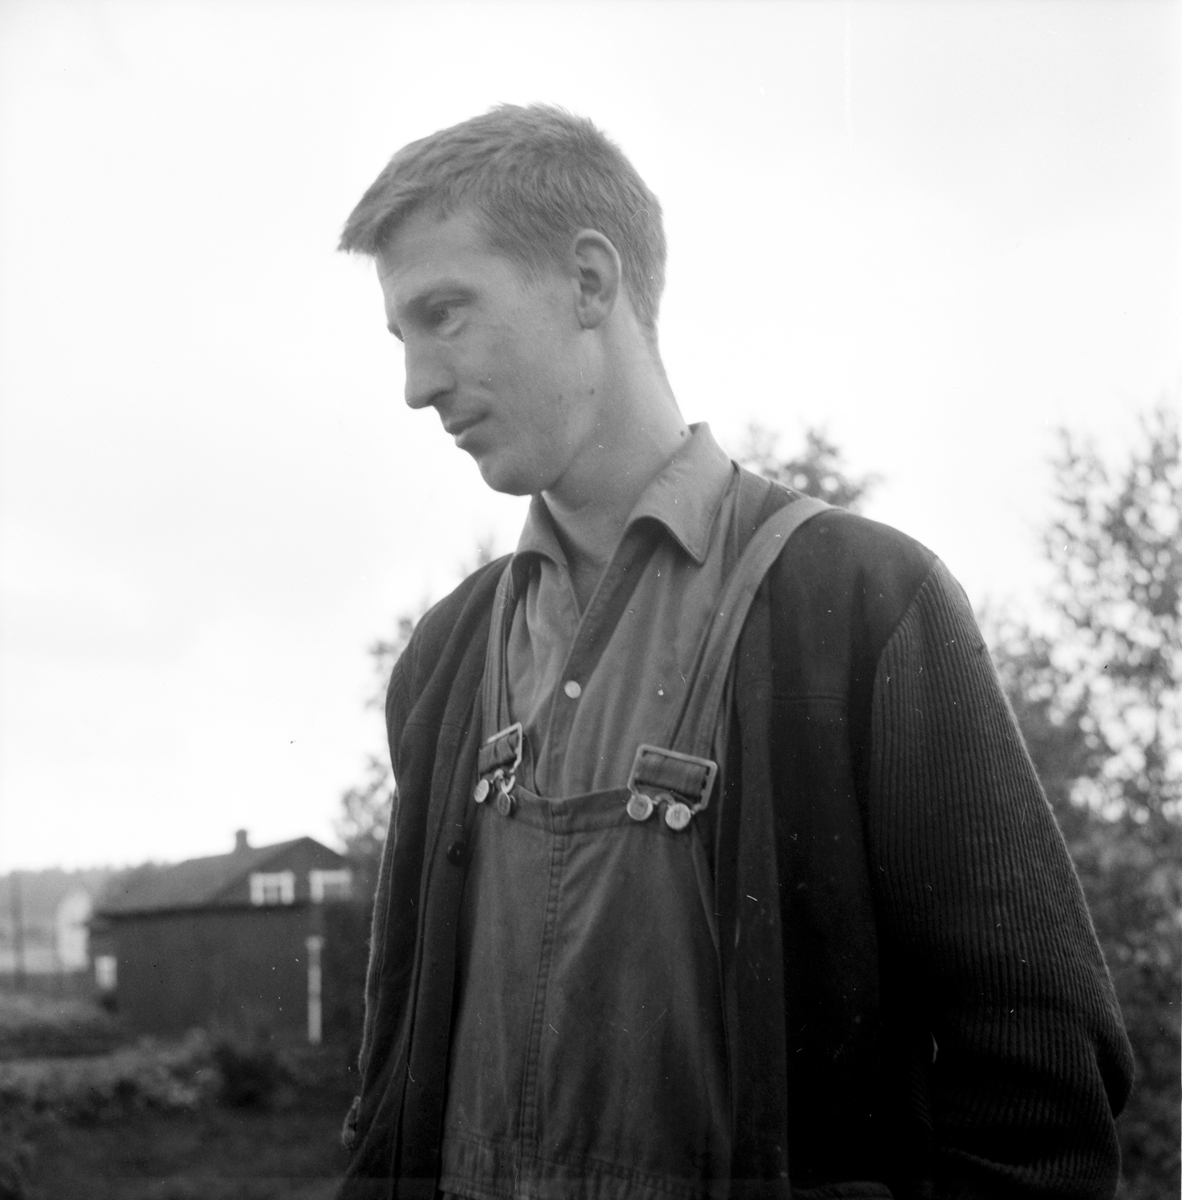 Undersvik,
Vägras i Simeå,
September 1965